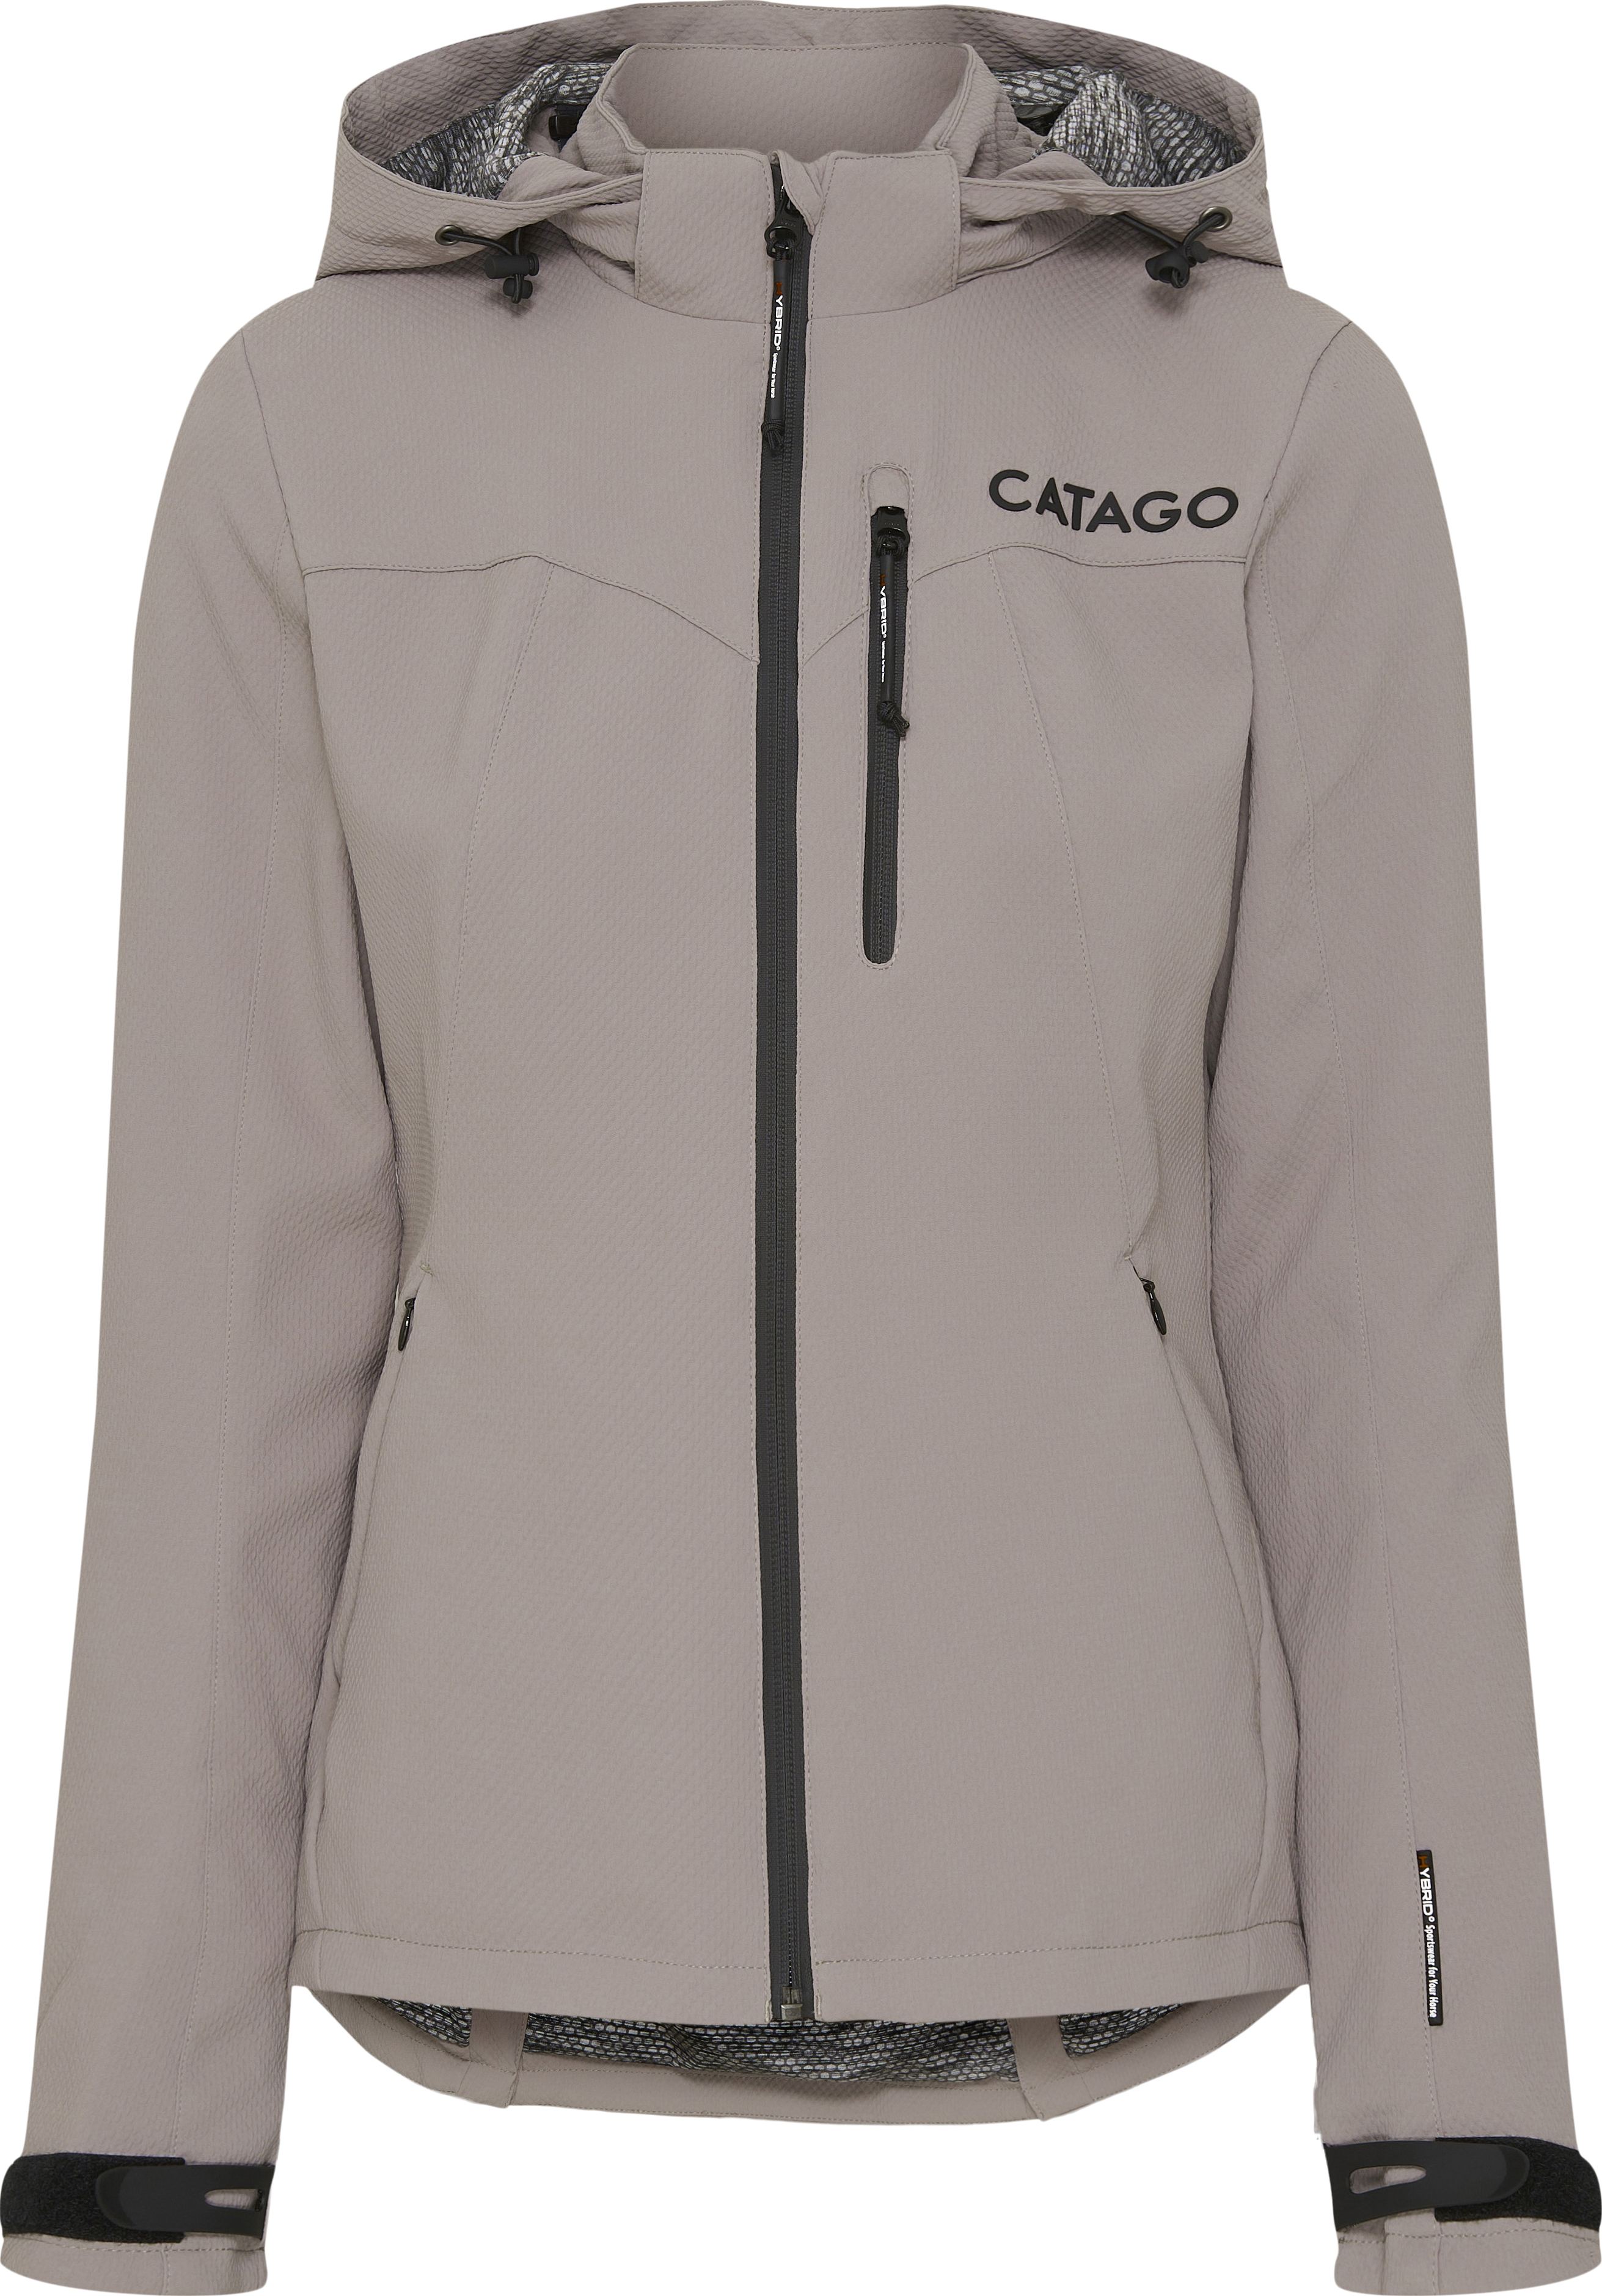 CATAGO Hybrid Short Jacket - Driftwood (XS), Catago